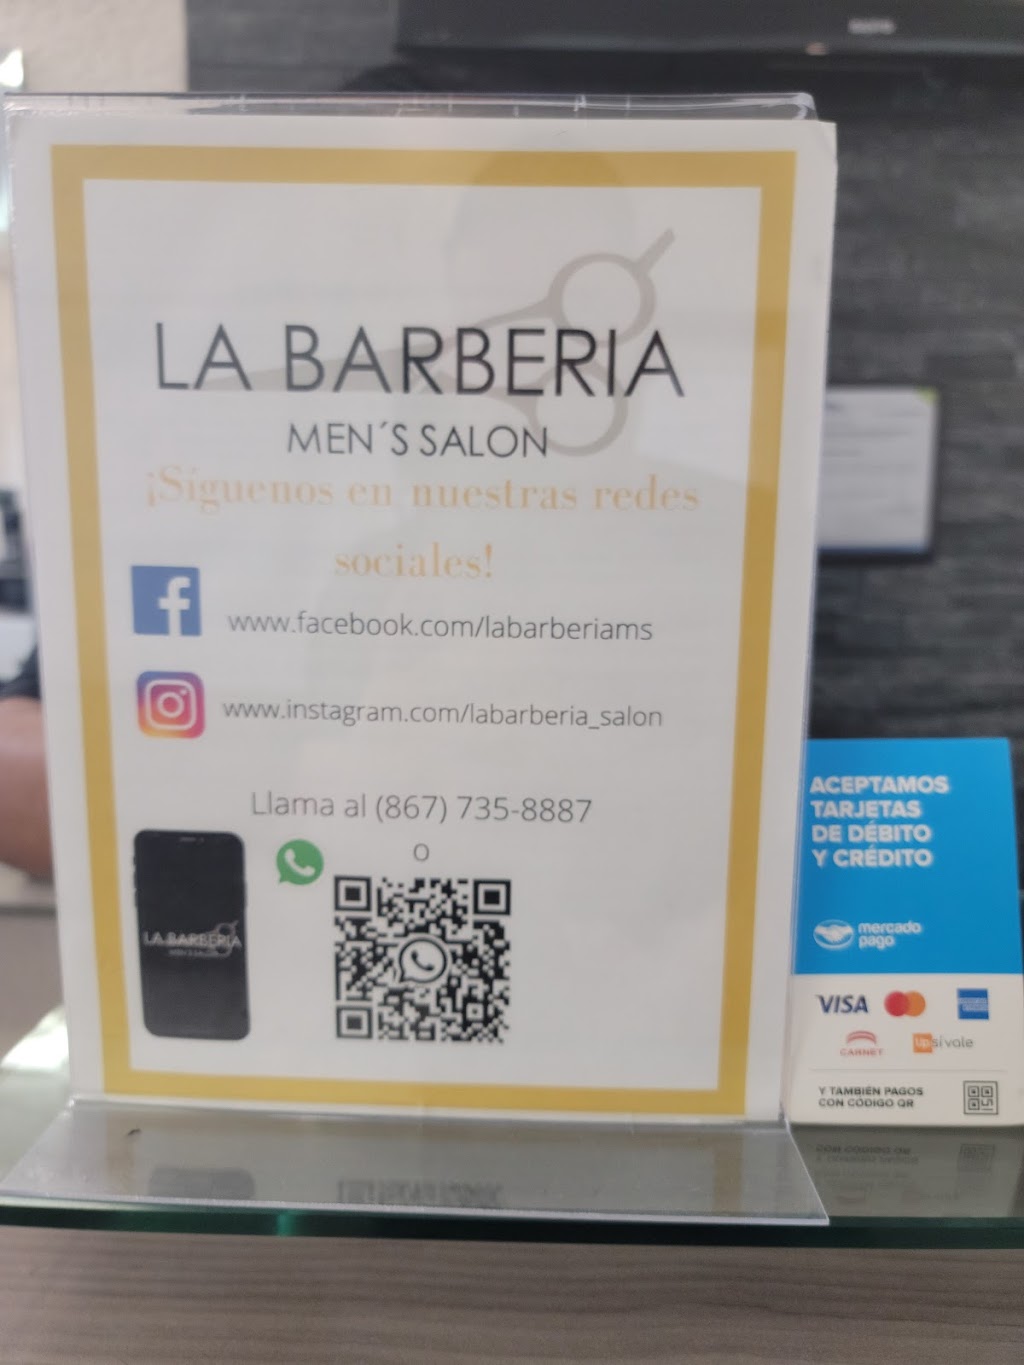 La barberia mens salon | C. Rio Panuco 3234, Madero, 88270 Nuevo Laredo, Tamps., Mexico | Phone: 867 435 8887